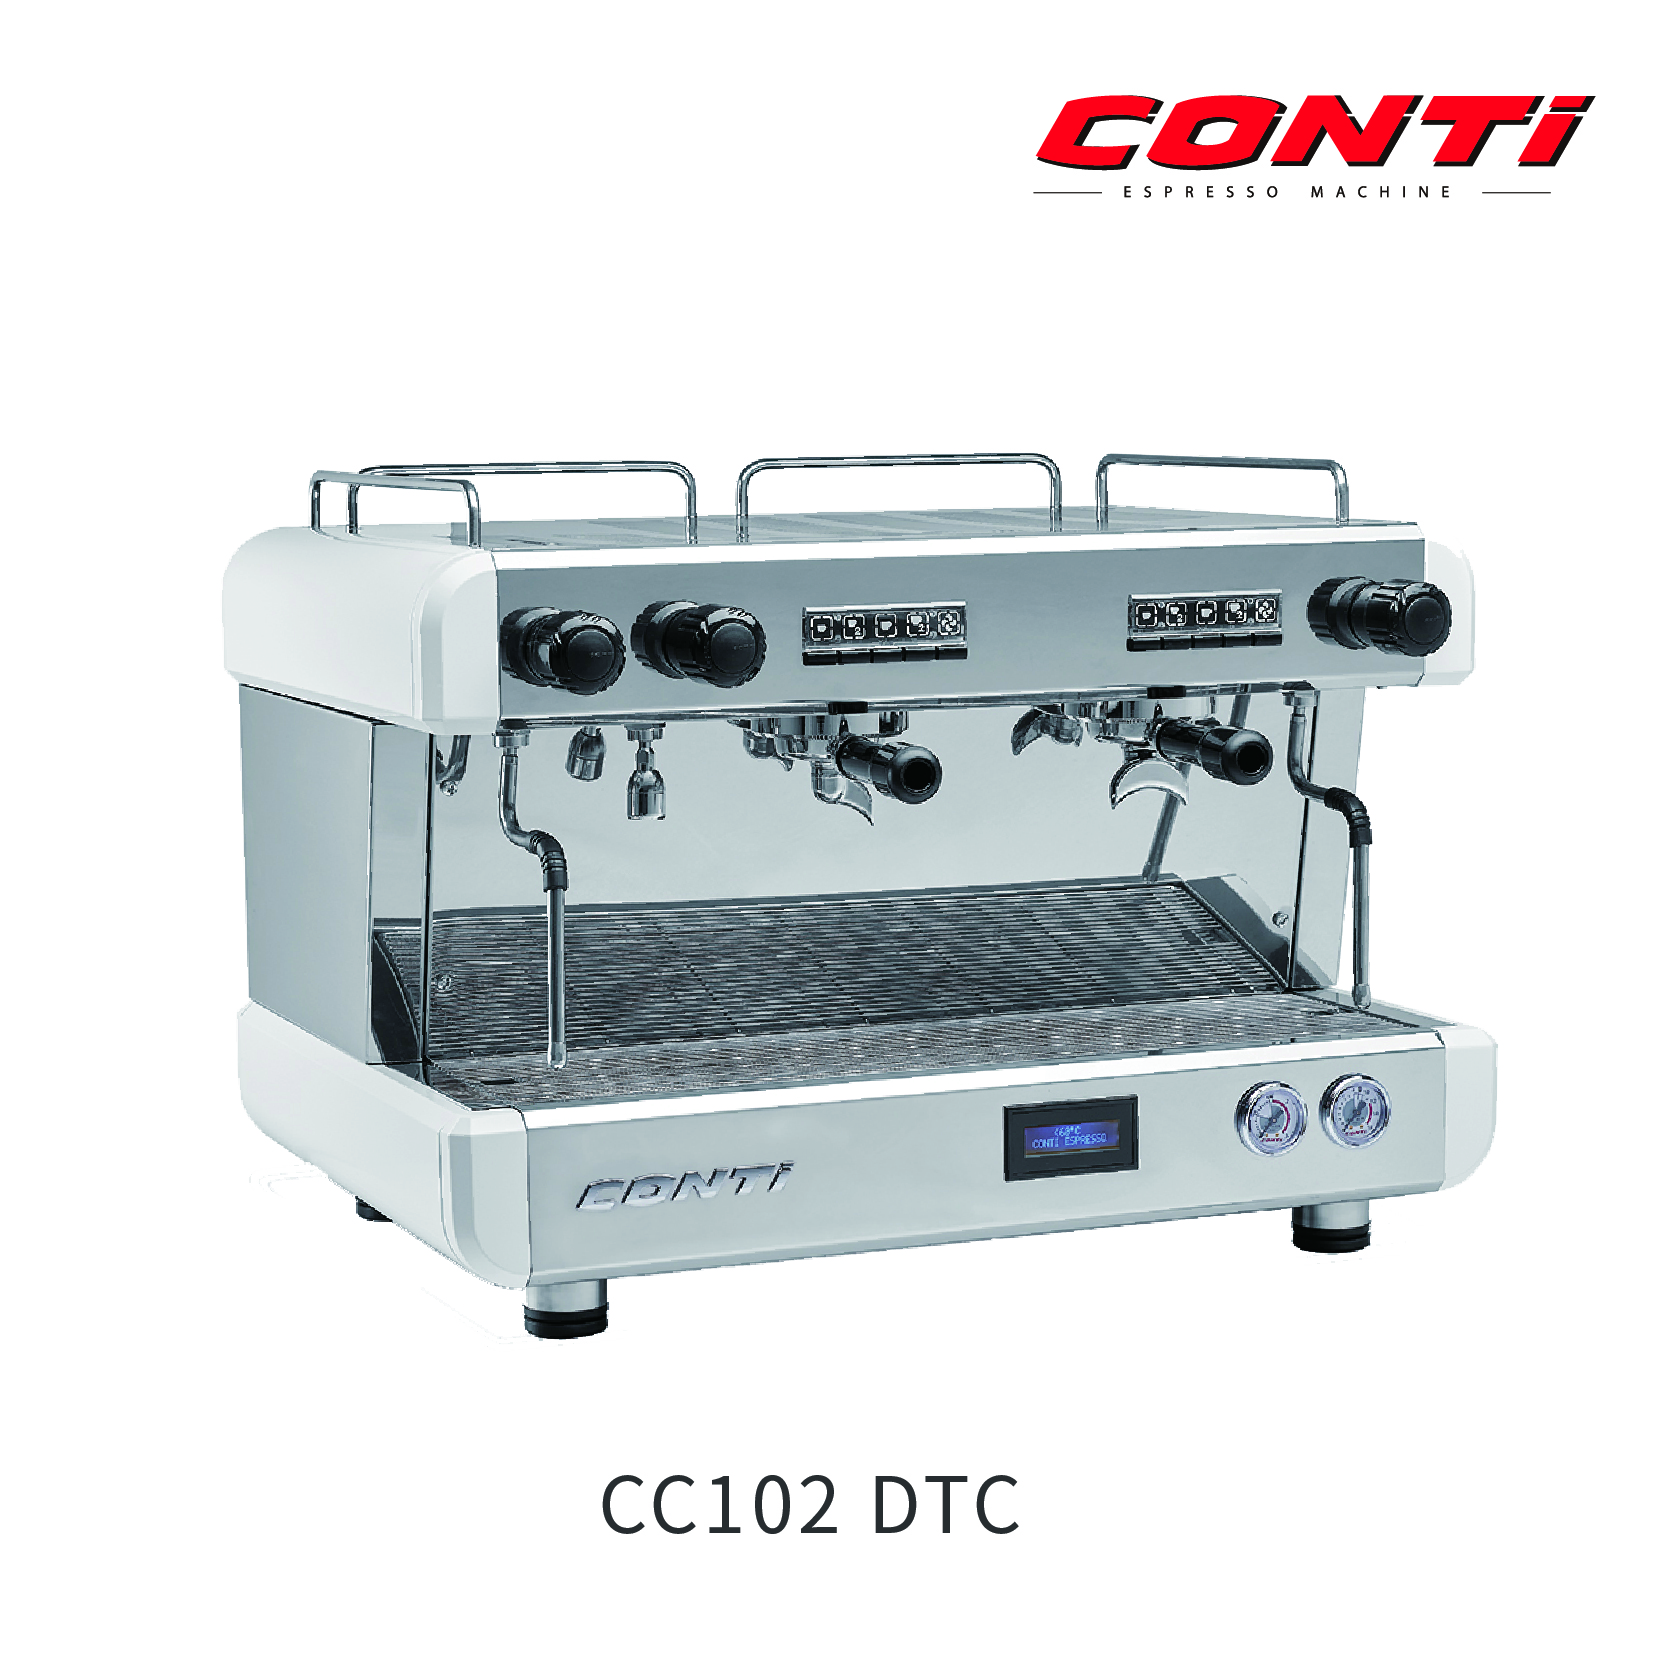 萃茶萃咖啡半自动咖啡机Conti CC101/102 DTC1G/ 2G 白色 